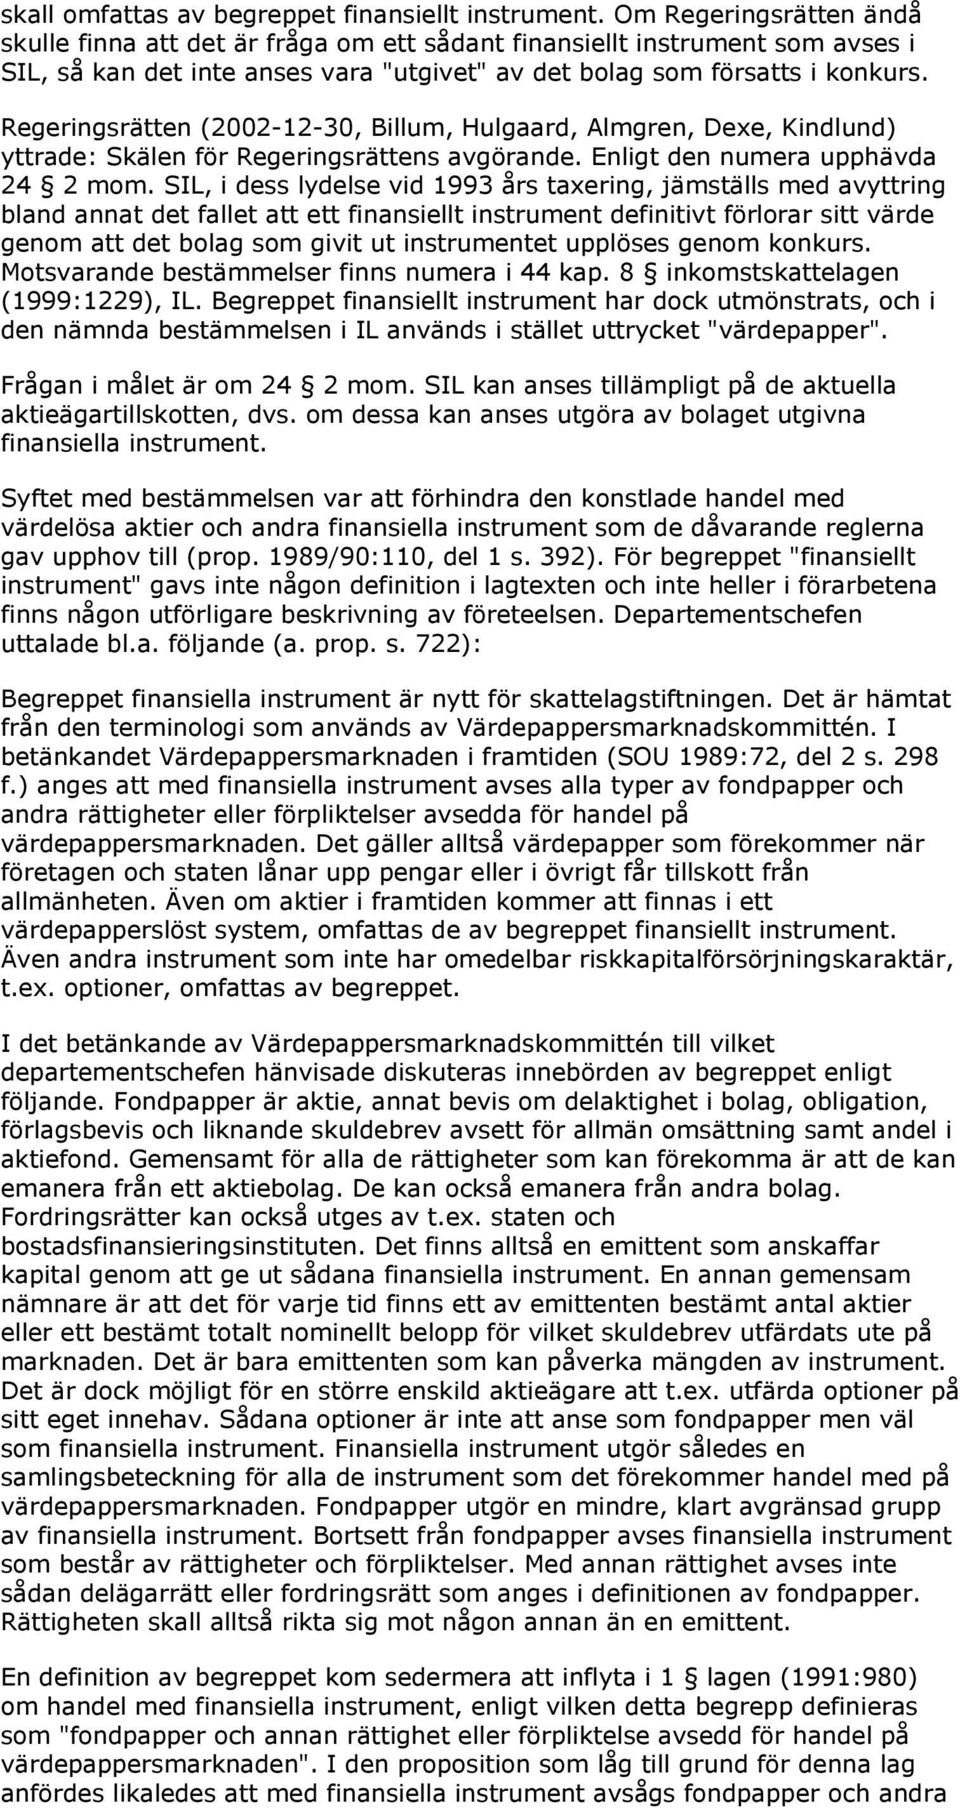 Regeringsrätten (2002-12-30, Billum, Hulgaard, Almgren, Dexe, Kindlund) yttrade: Skälen för Regeringsrättens avgörande. Enligt den numera upphävda 24 2 mom.